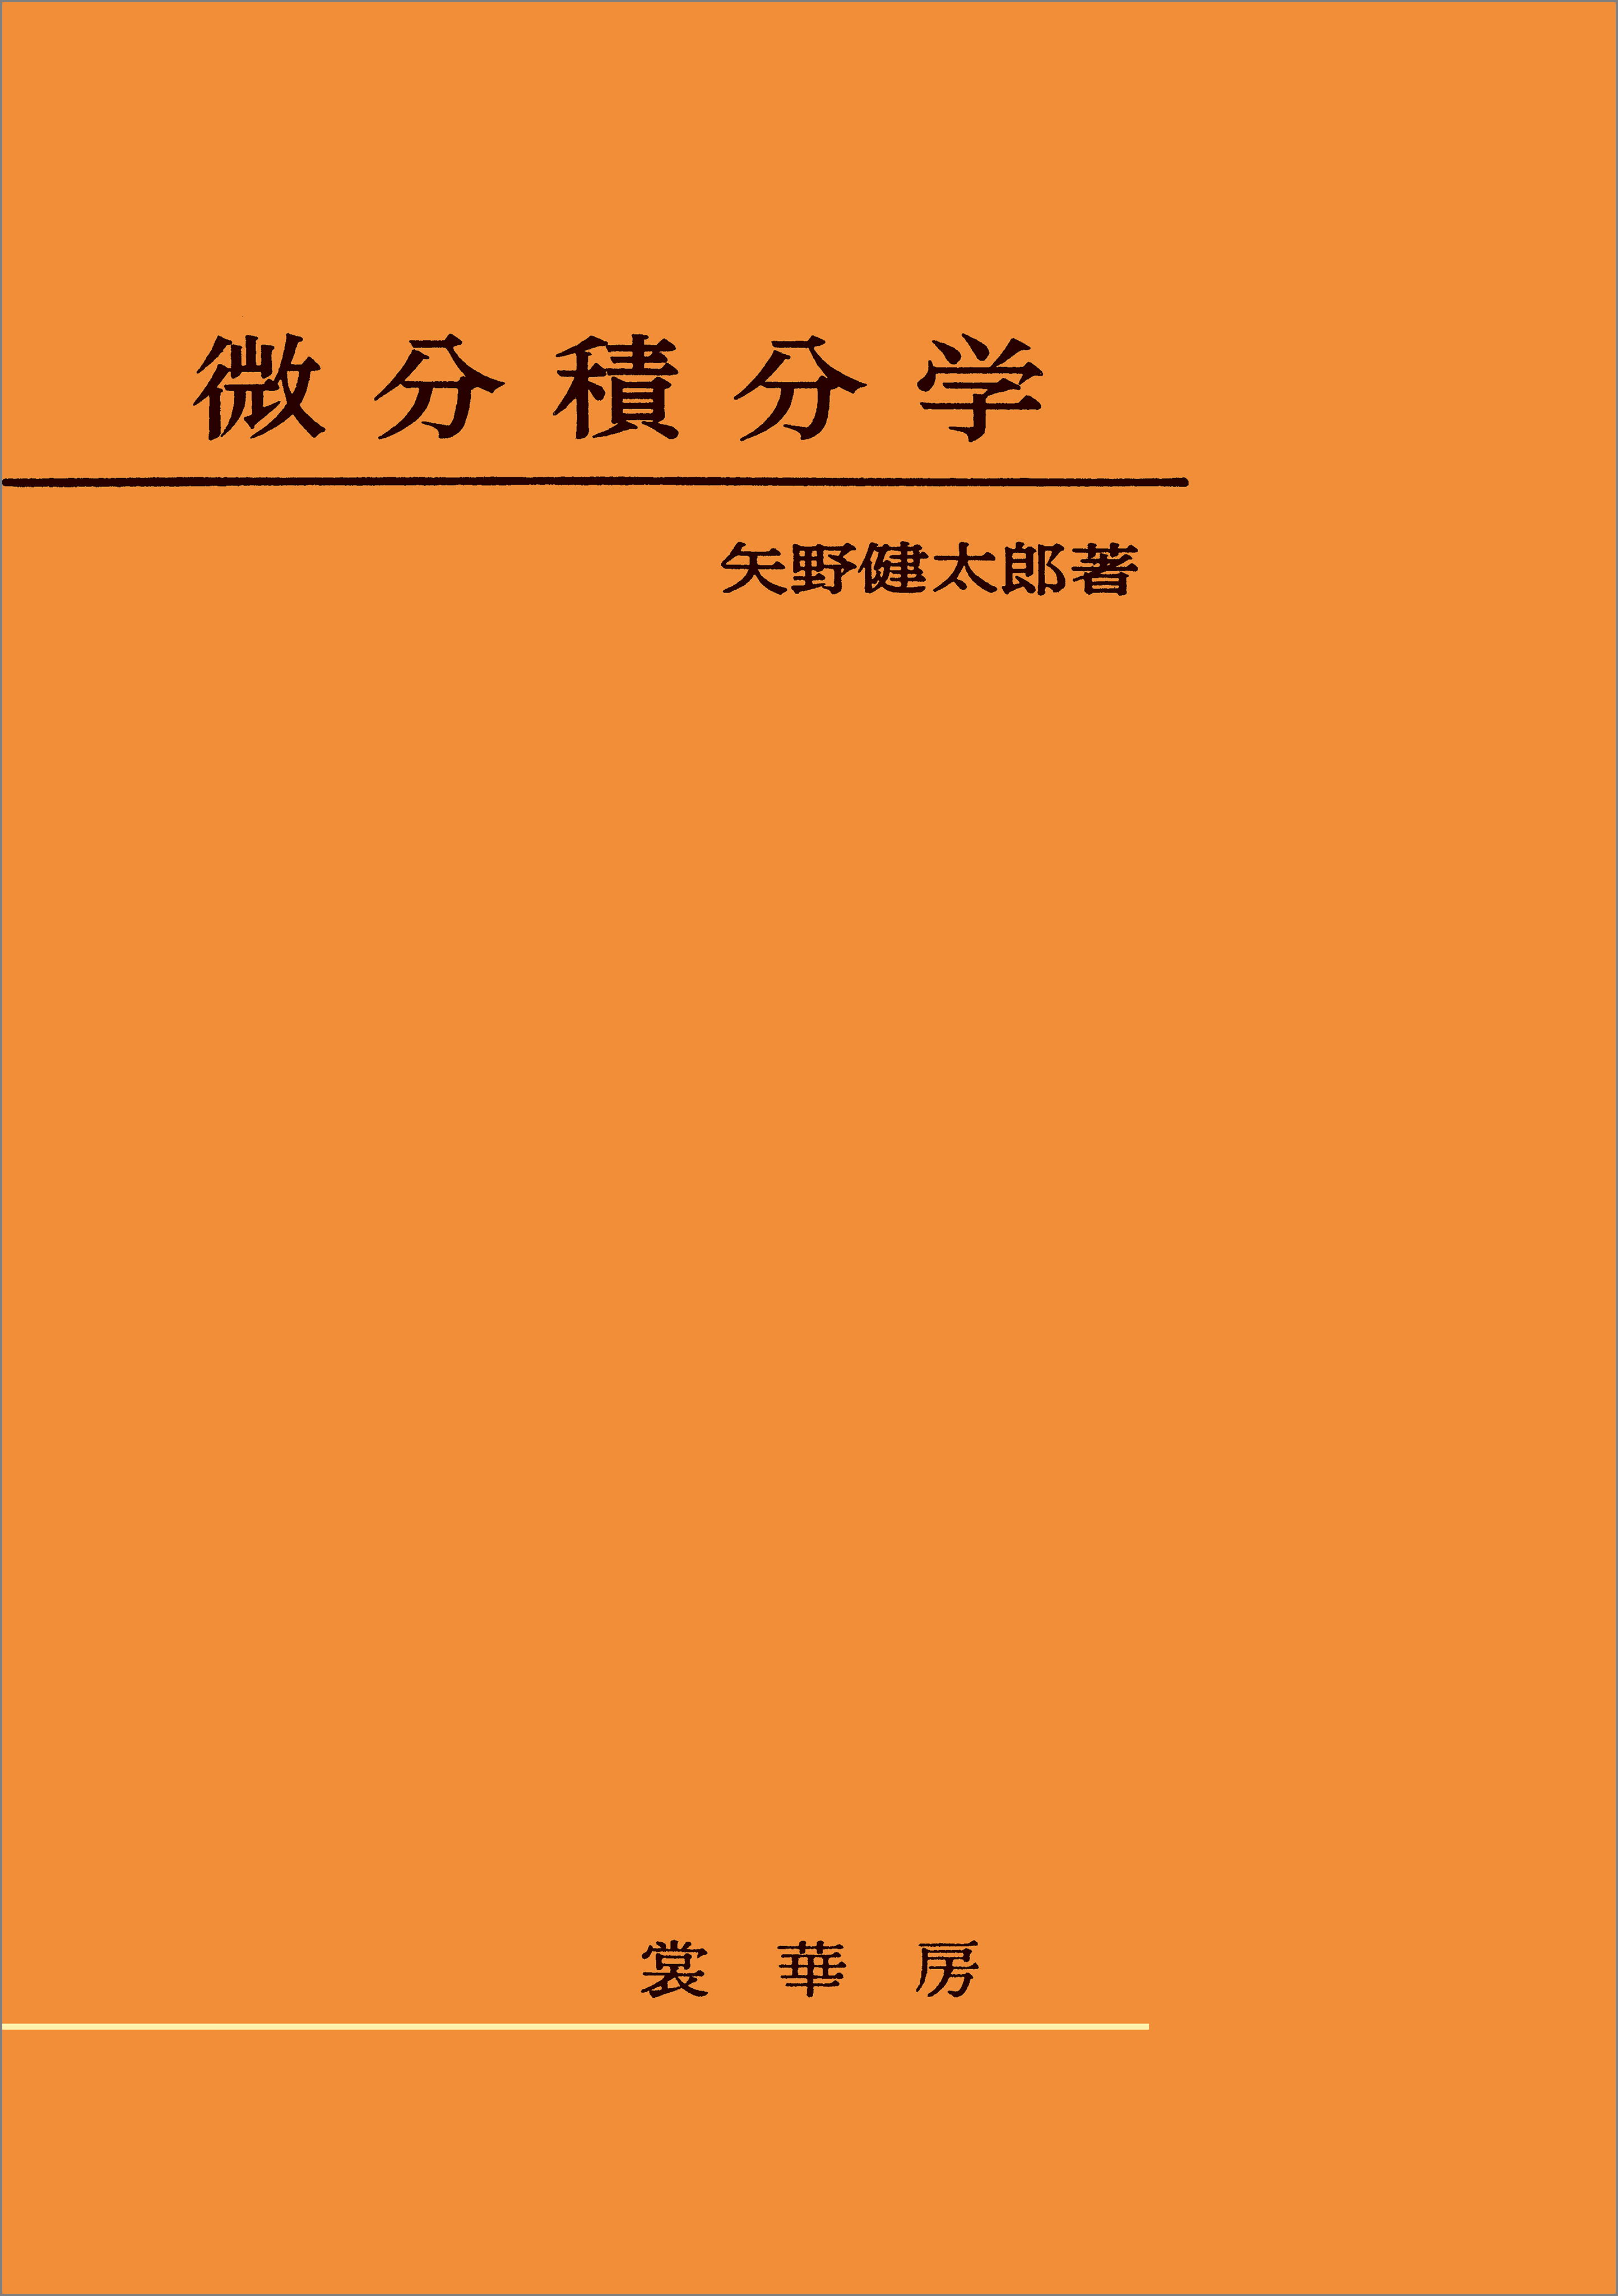 WEB限定デザイン 微分積分学 第２巻 改訂新編 藤原松三郎 数学 数学書